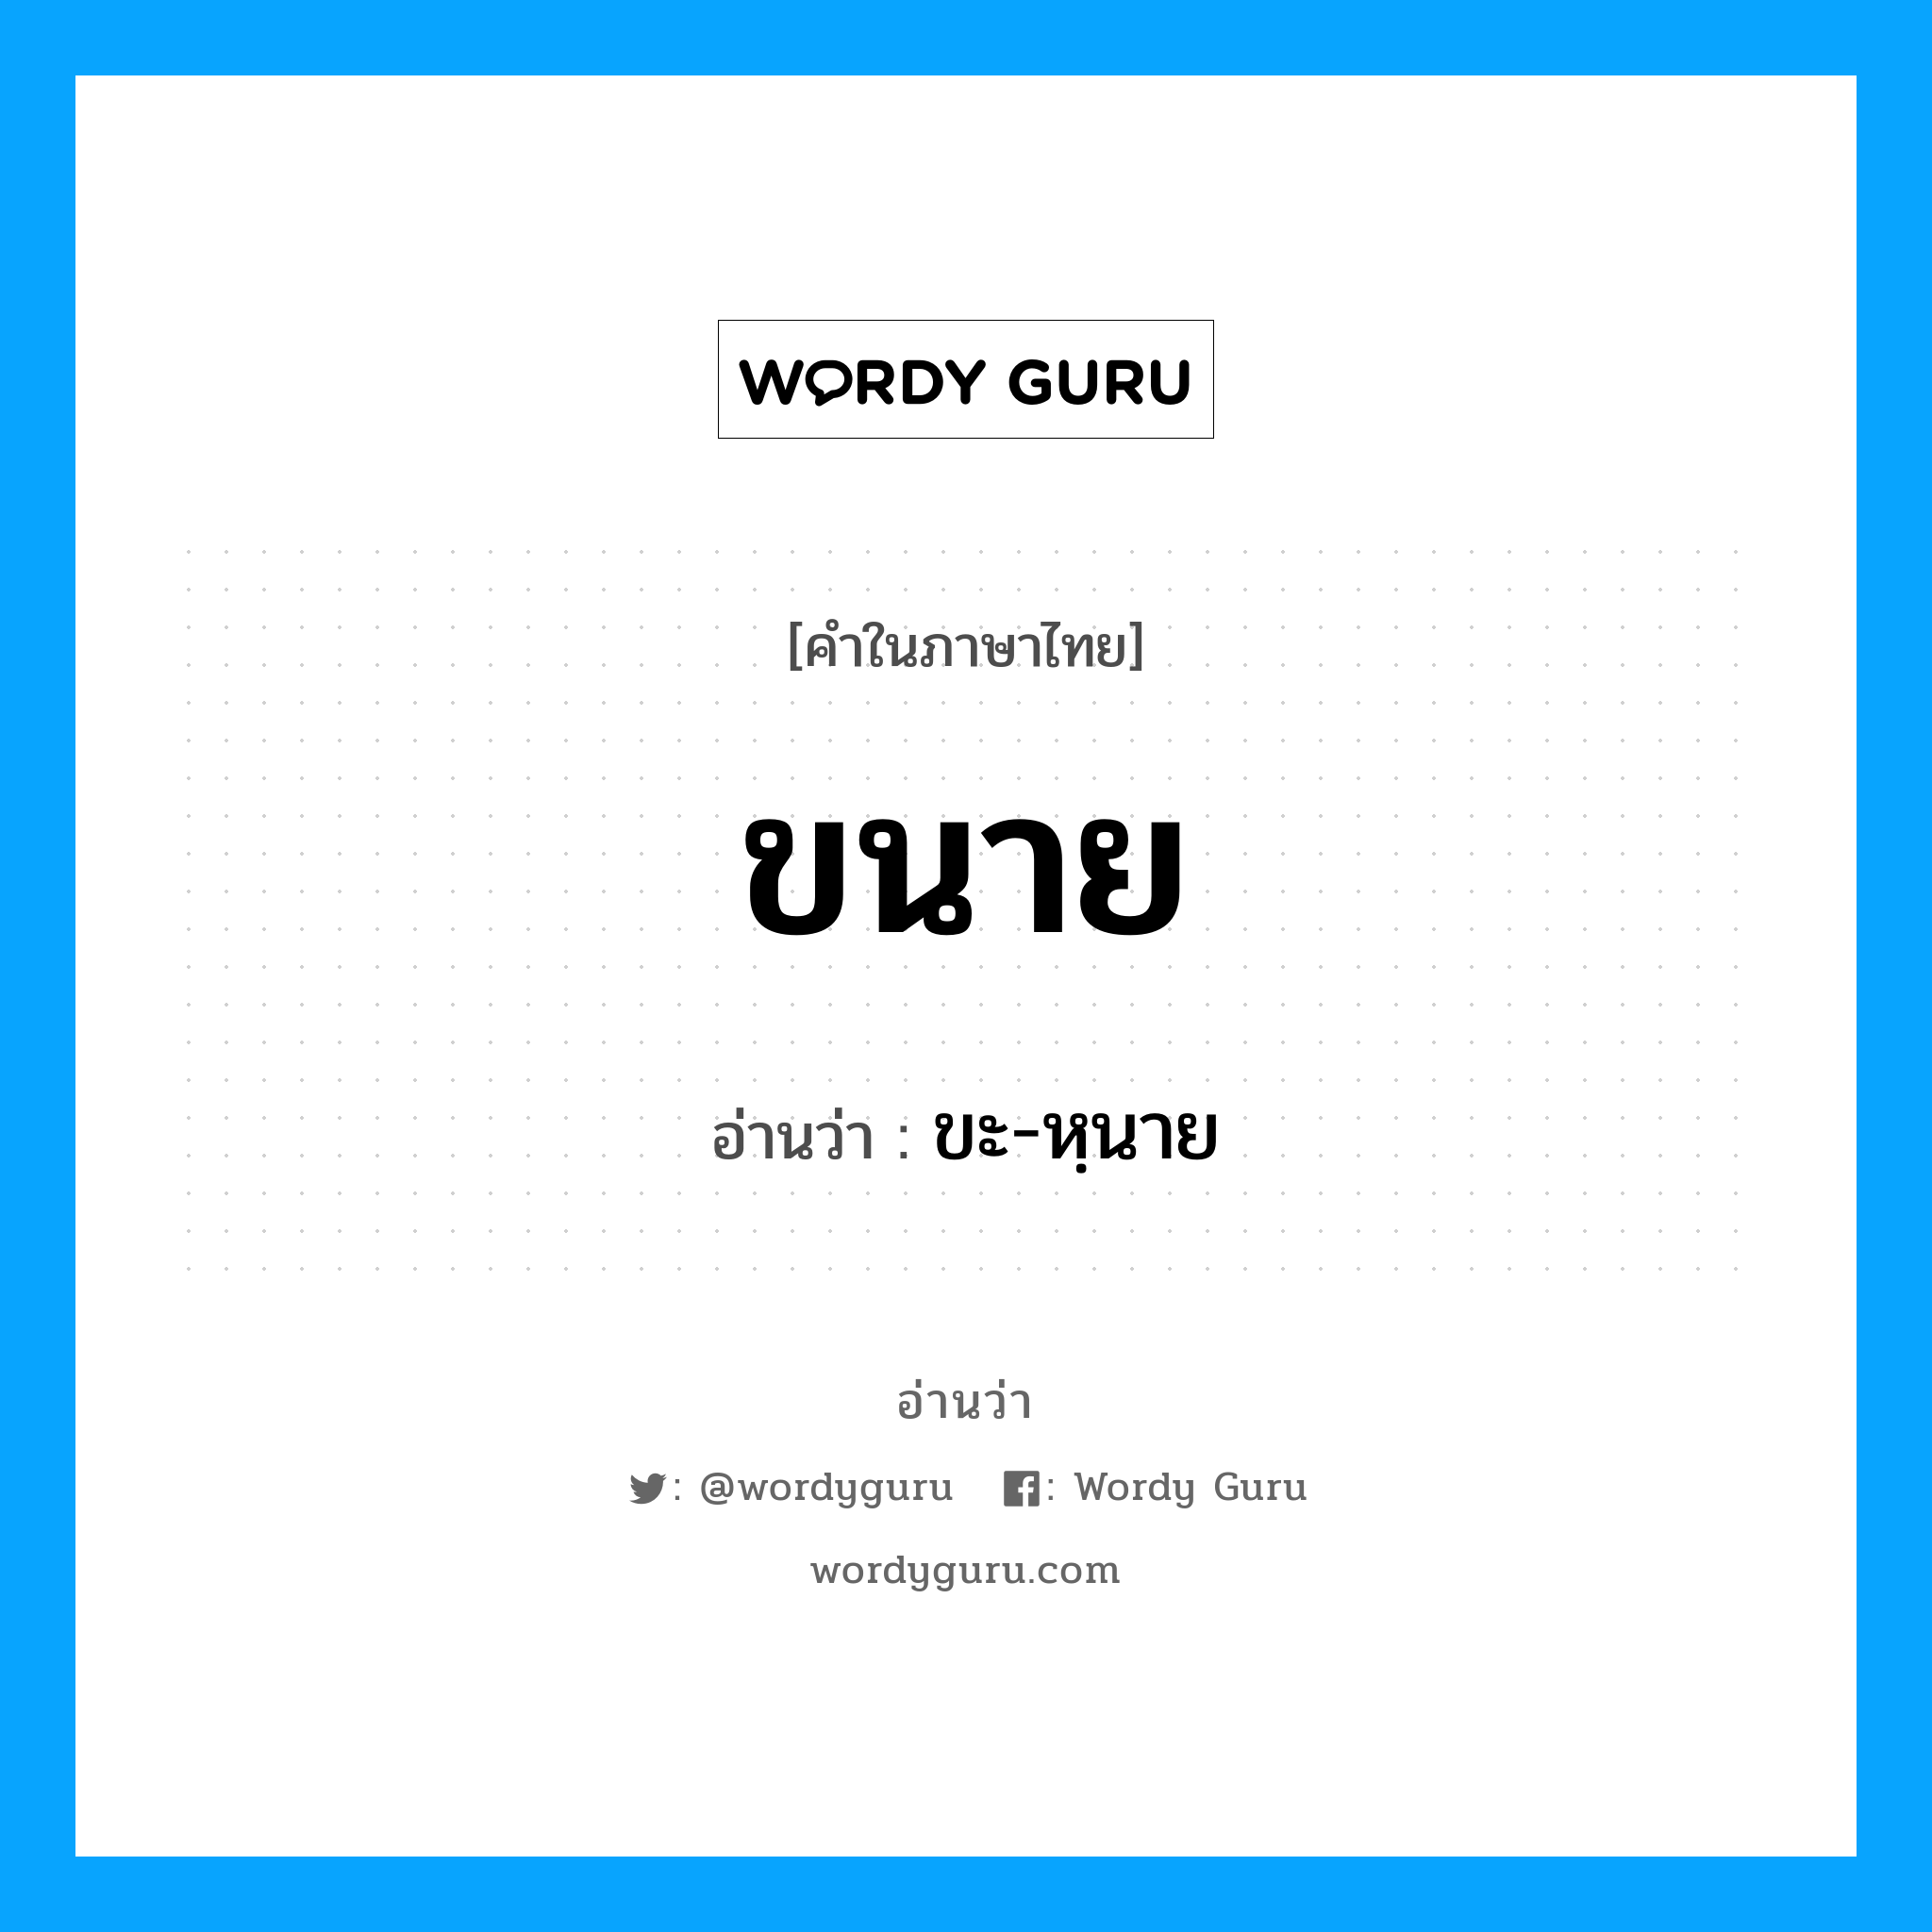 ขะ-หฺนาย เป็นคำอ่านของคำไหน?, คำในภาษาไทย ขะ-หฺนาย อ่านว่า ขนาย